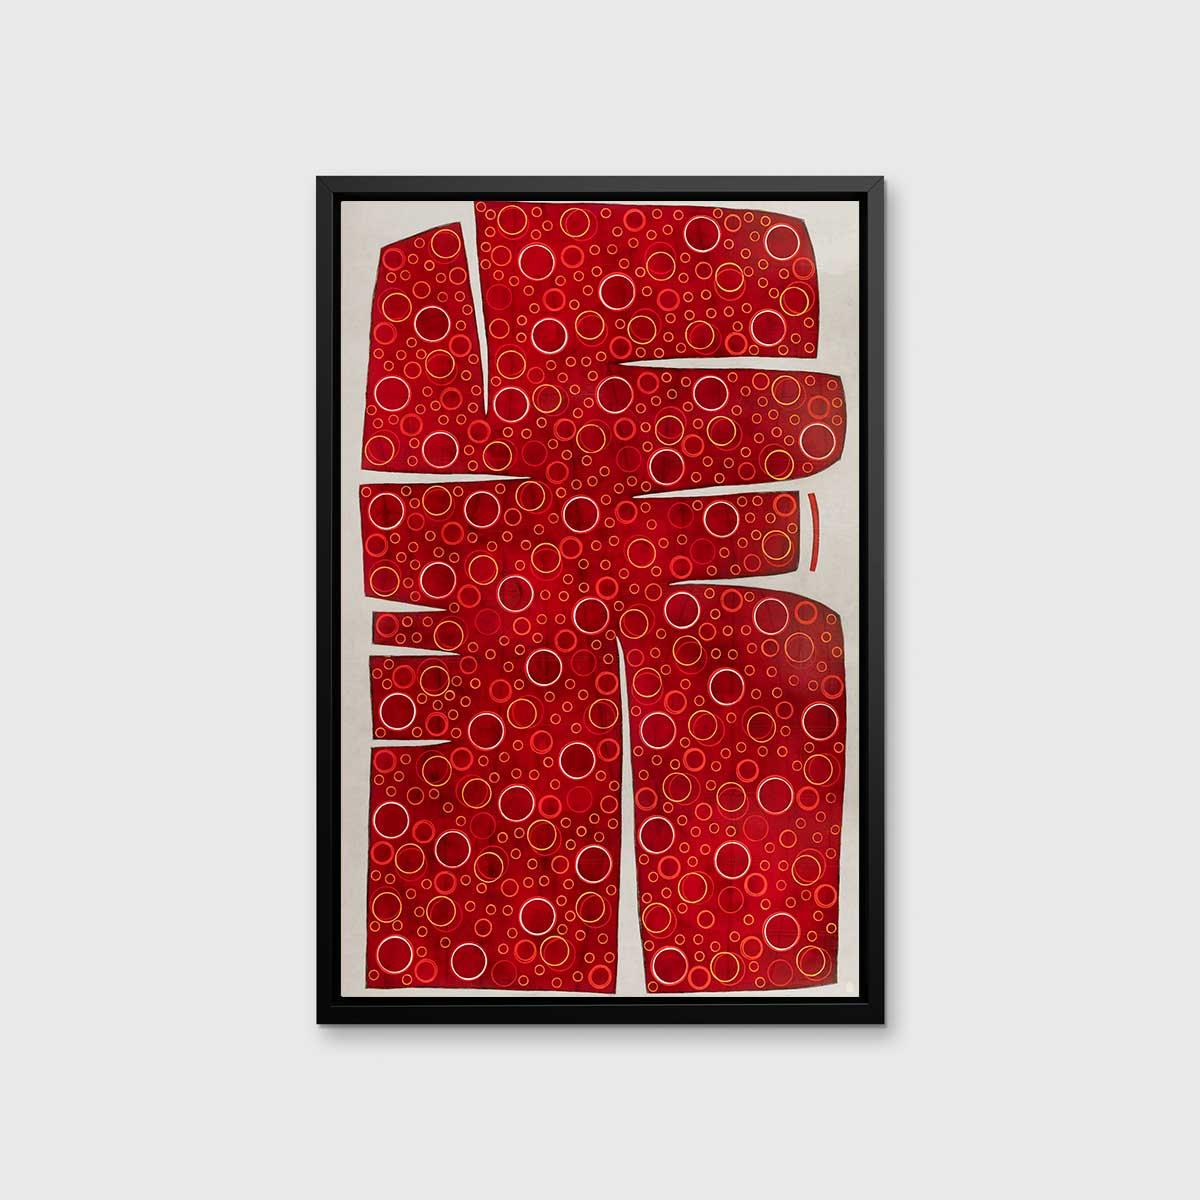 Cette impression giclée abstraite en édition limitée de Sofie Swann présente une forme abstraite organique rouge qui couvre presque toute la toile, laissant une petite bordure de blanc cassé autour d'elle. La forme est d'un rouge profond, et remplie